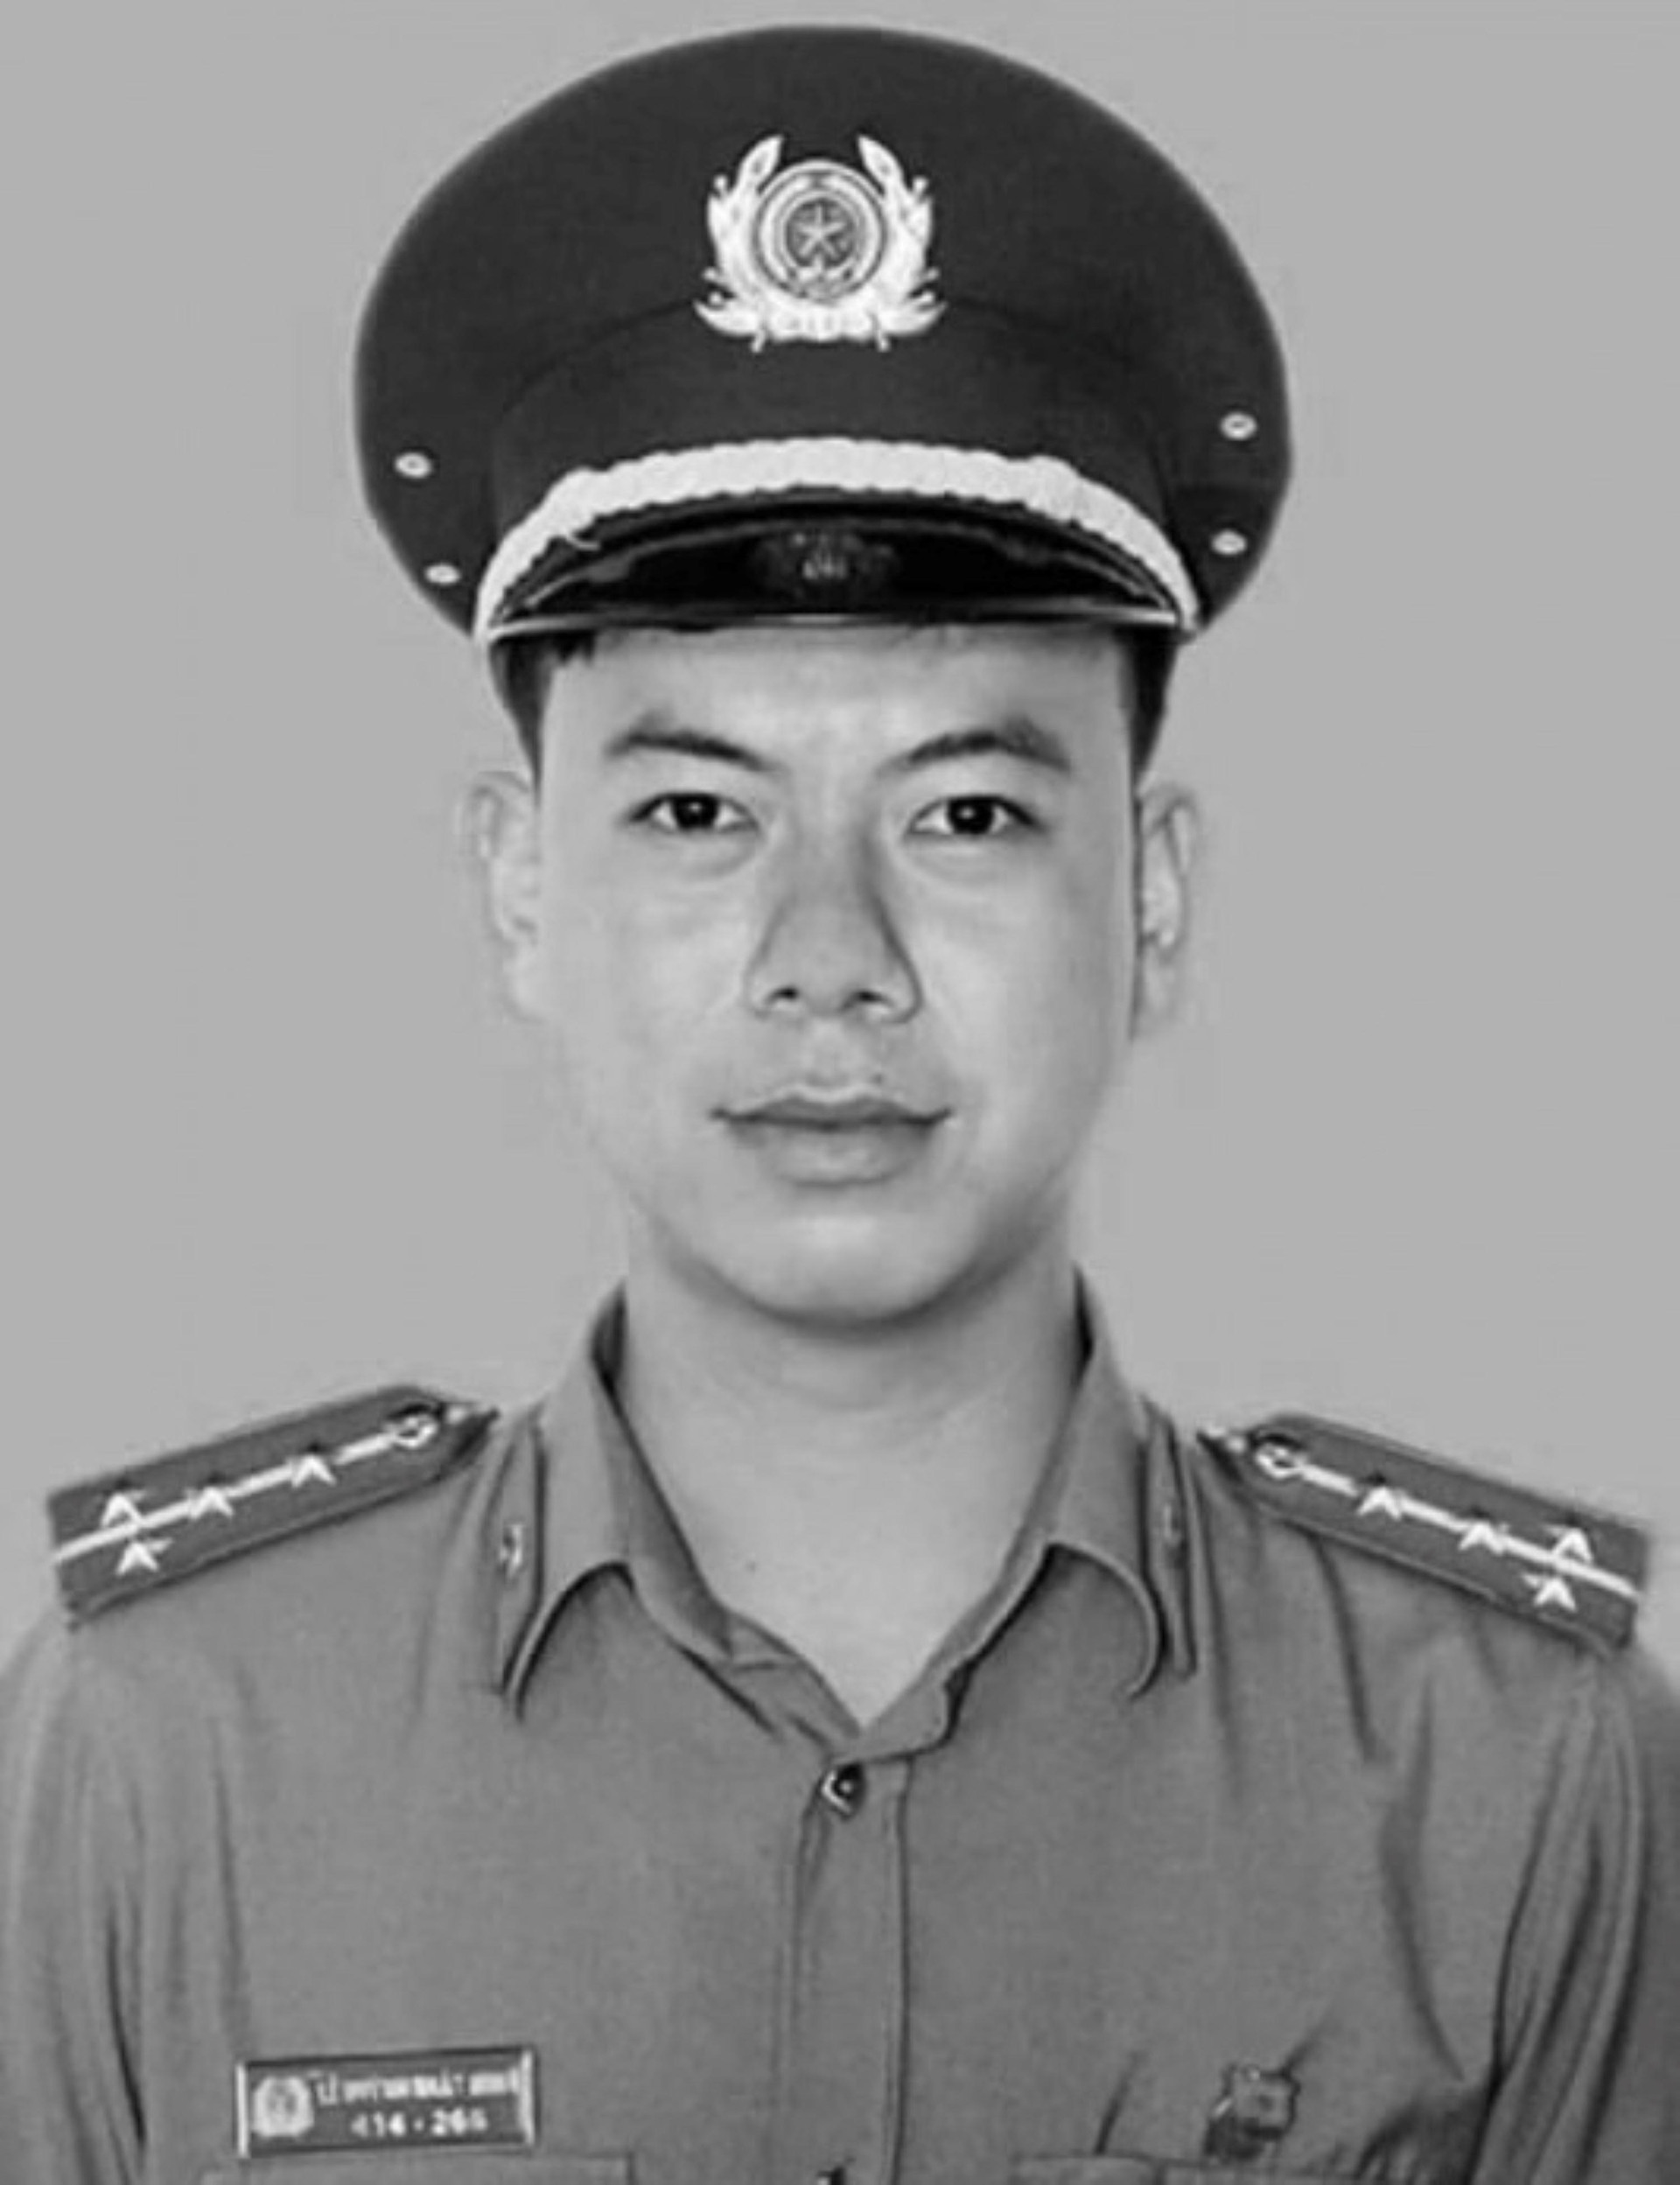  Đại úy công an ở Tây Ninh hy sinh khi làm nhiệm vụ chống dịch COVID-19 - 1